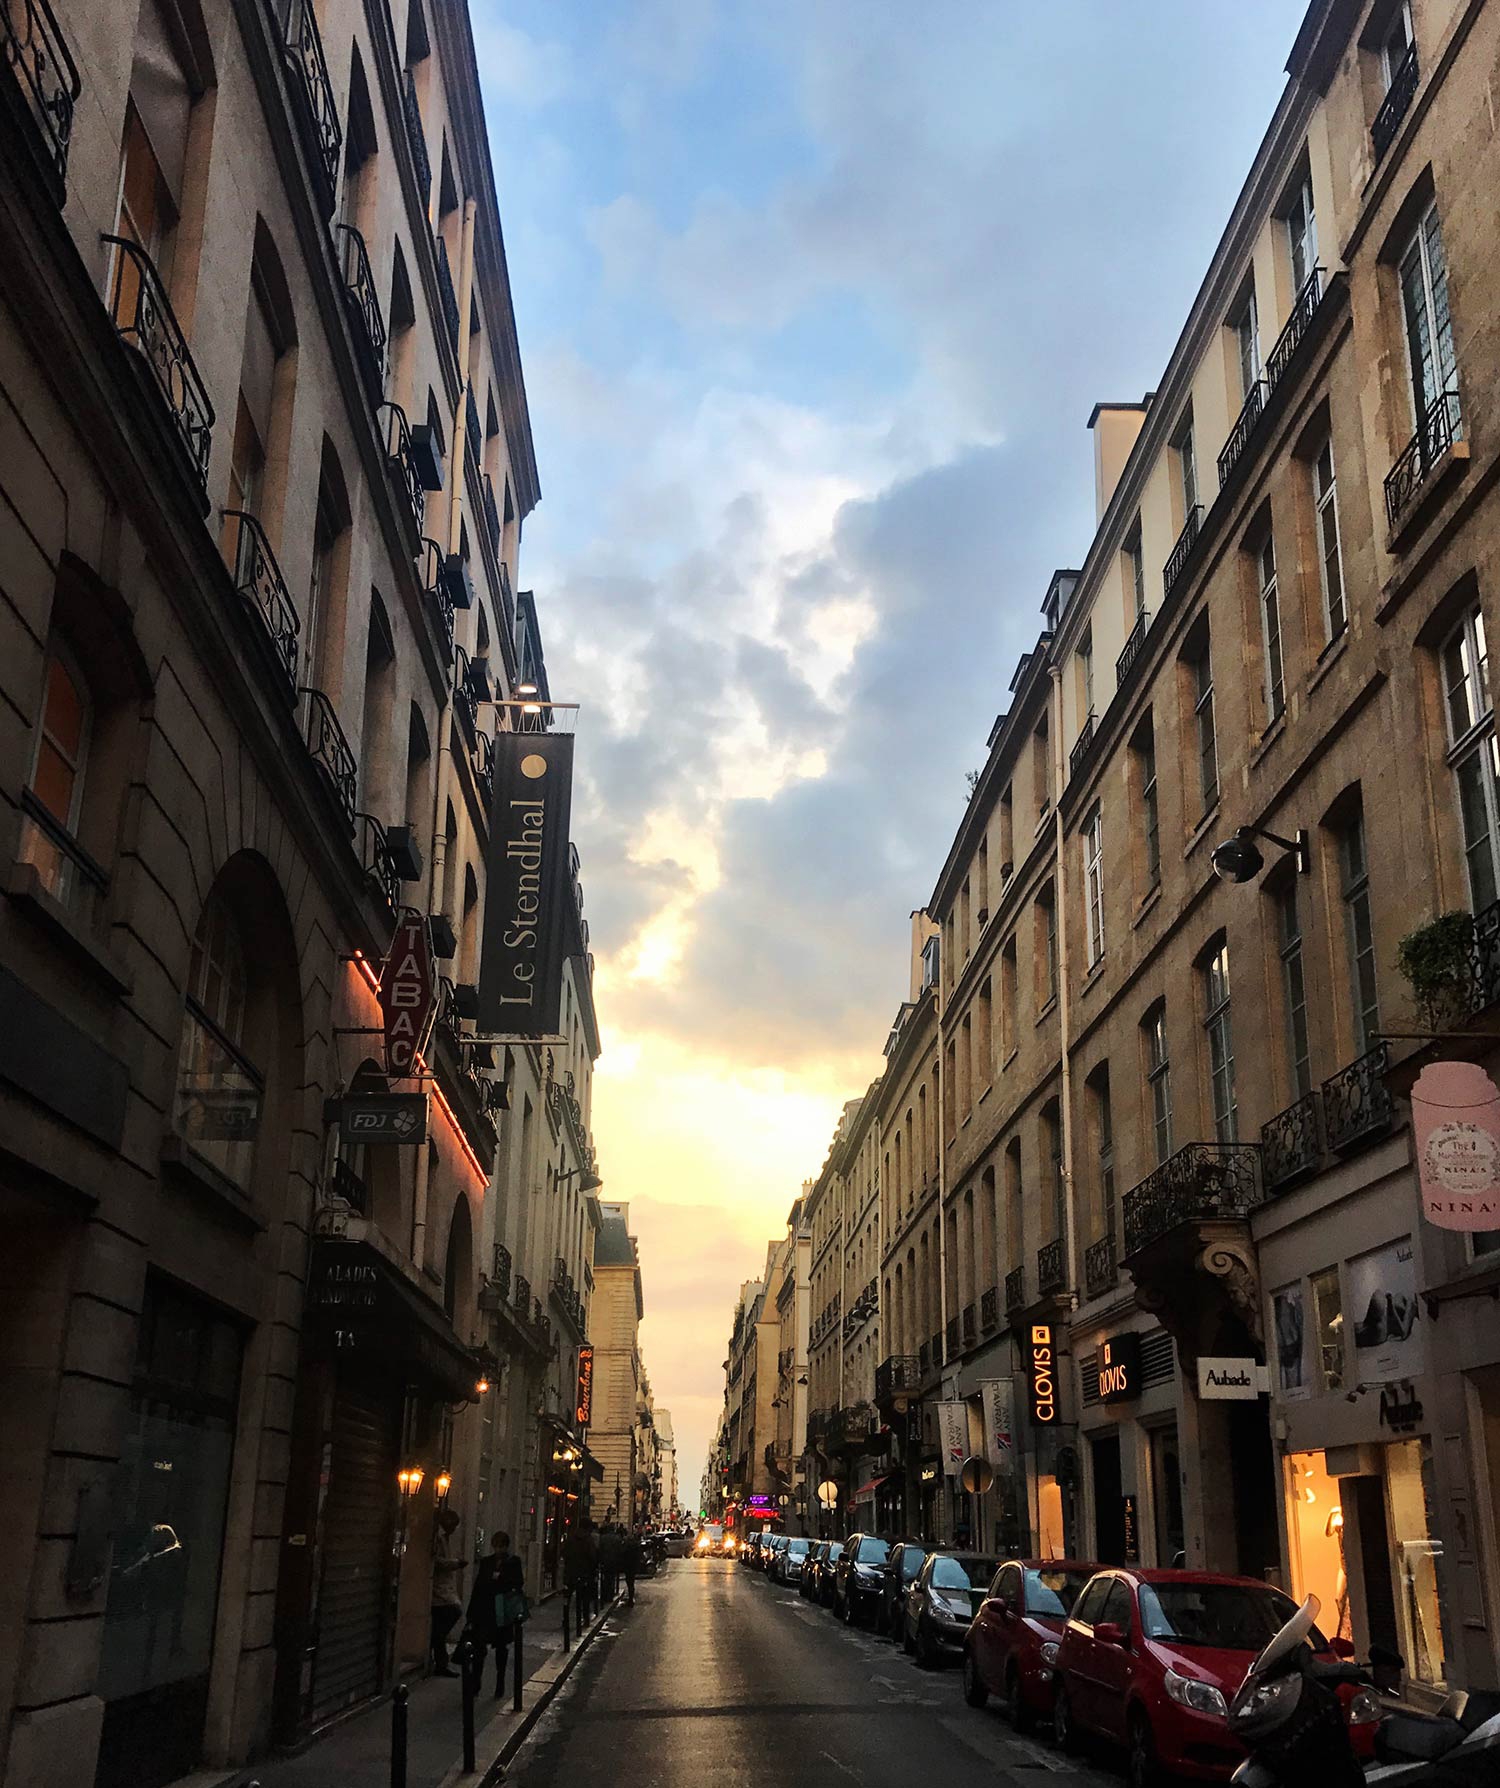 Sunset in Paris. December 2018 